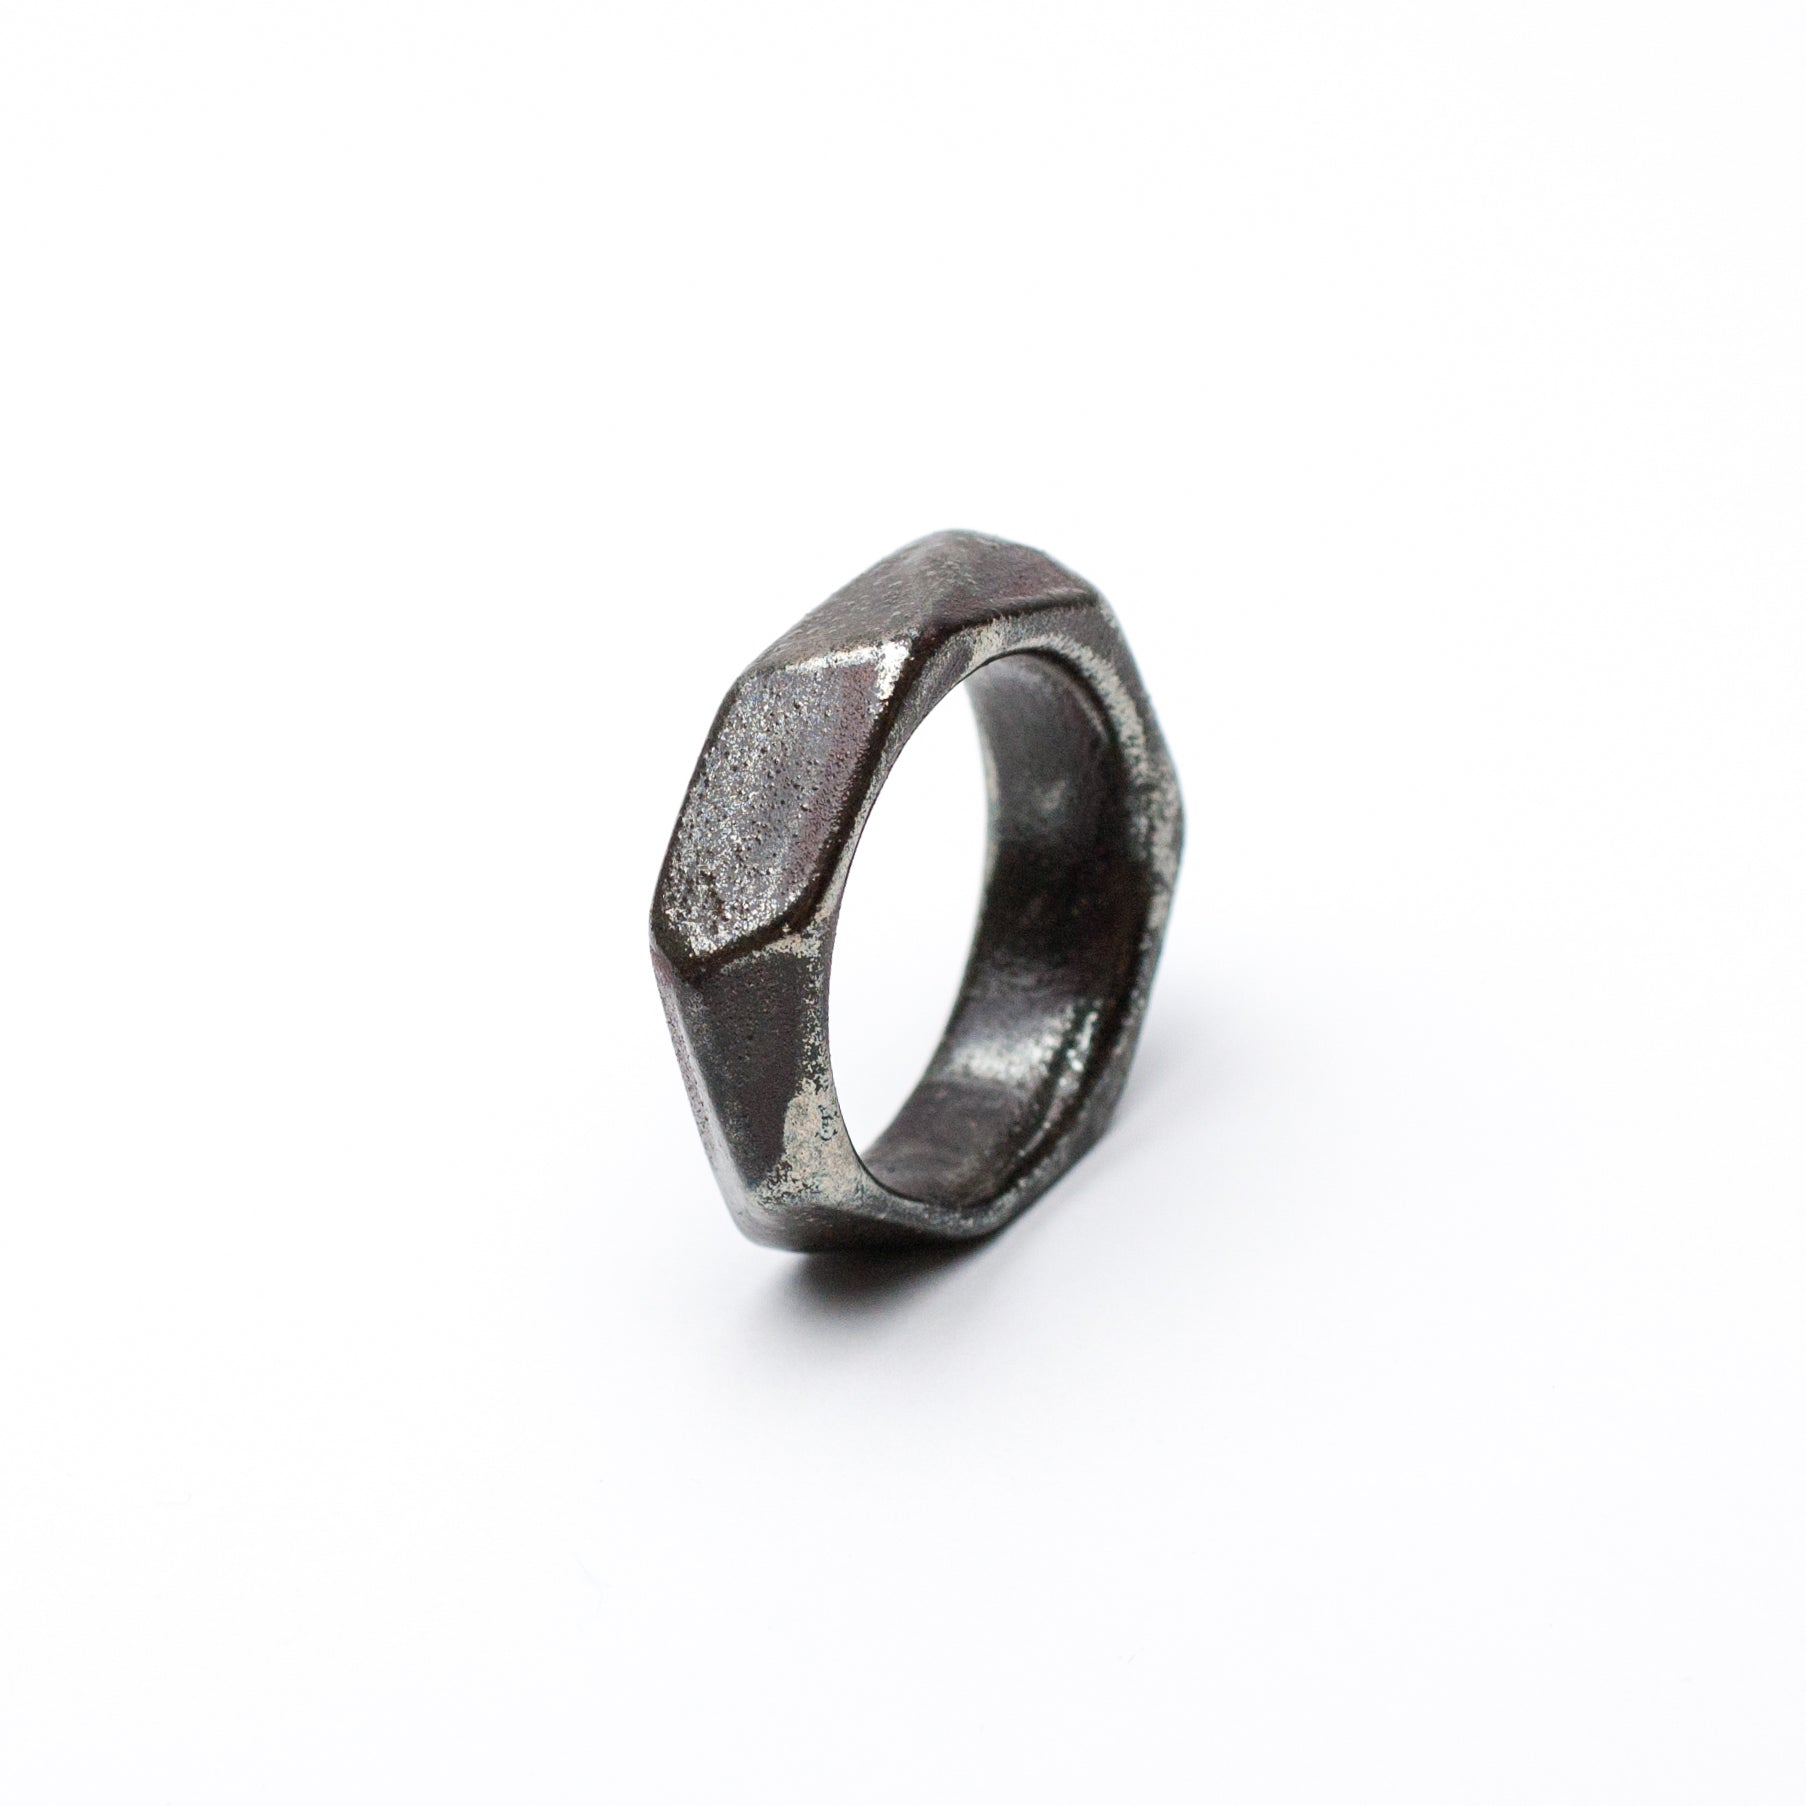 Ceramic ring Enyo size 19